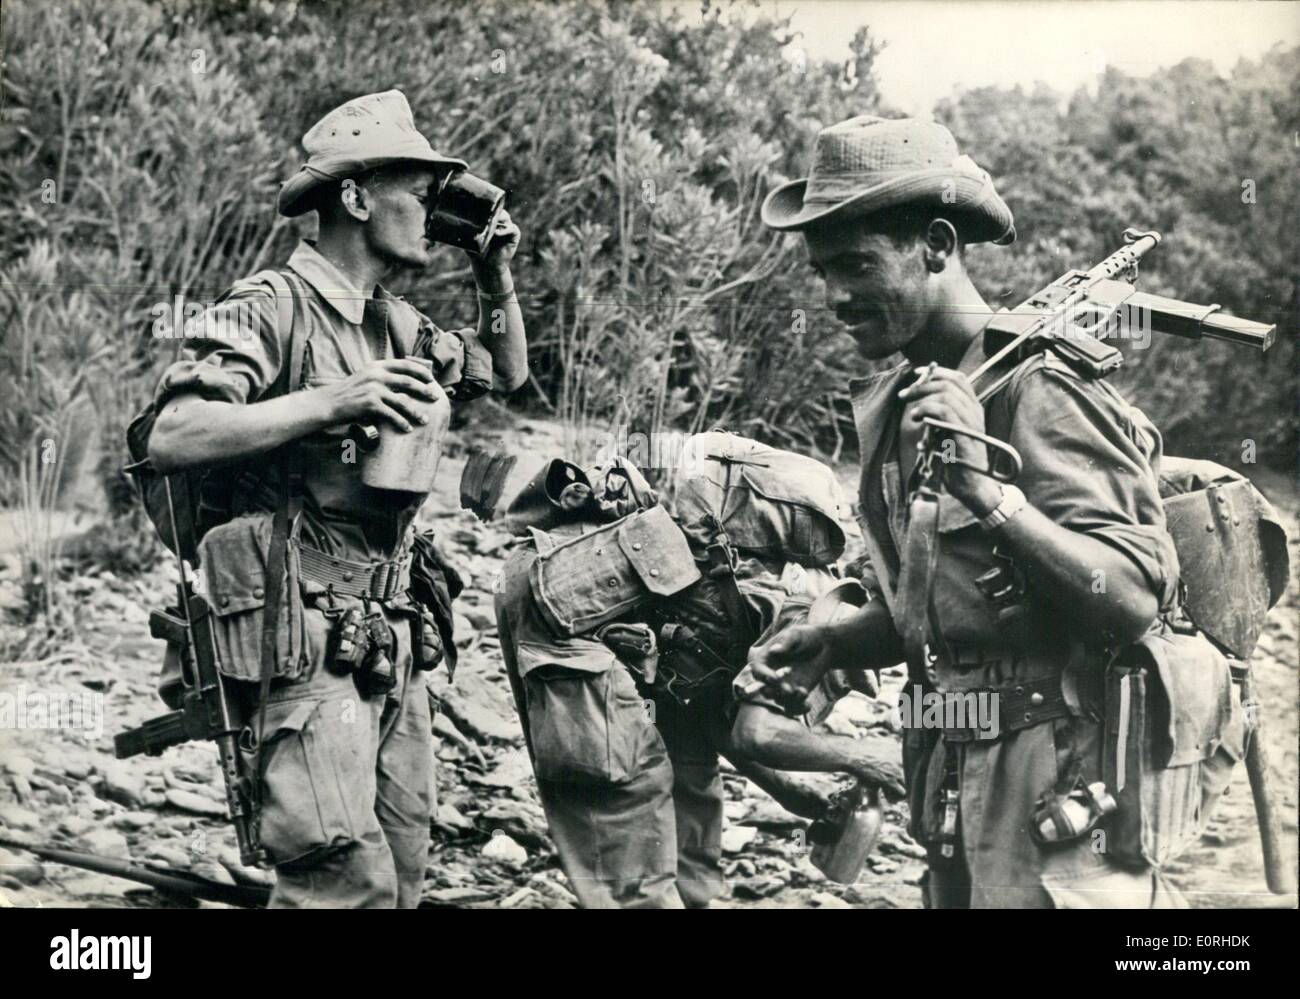 Agosto 08, 1959 - General Challe la ofensiva en curso en Kabilia OPS:- Los soldados franceses parar para tomar un trago de agua durante la marcha bajo el sol abrasador de Kabilia. Foto de stock